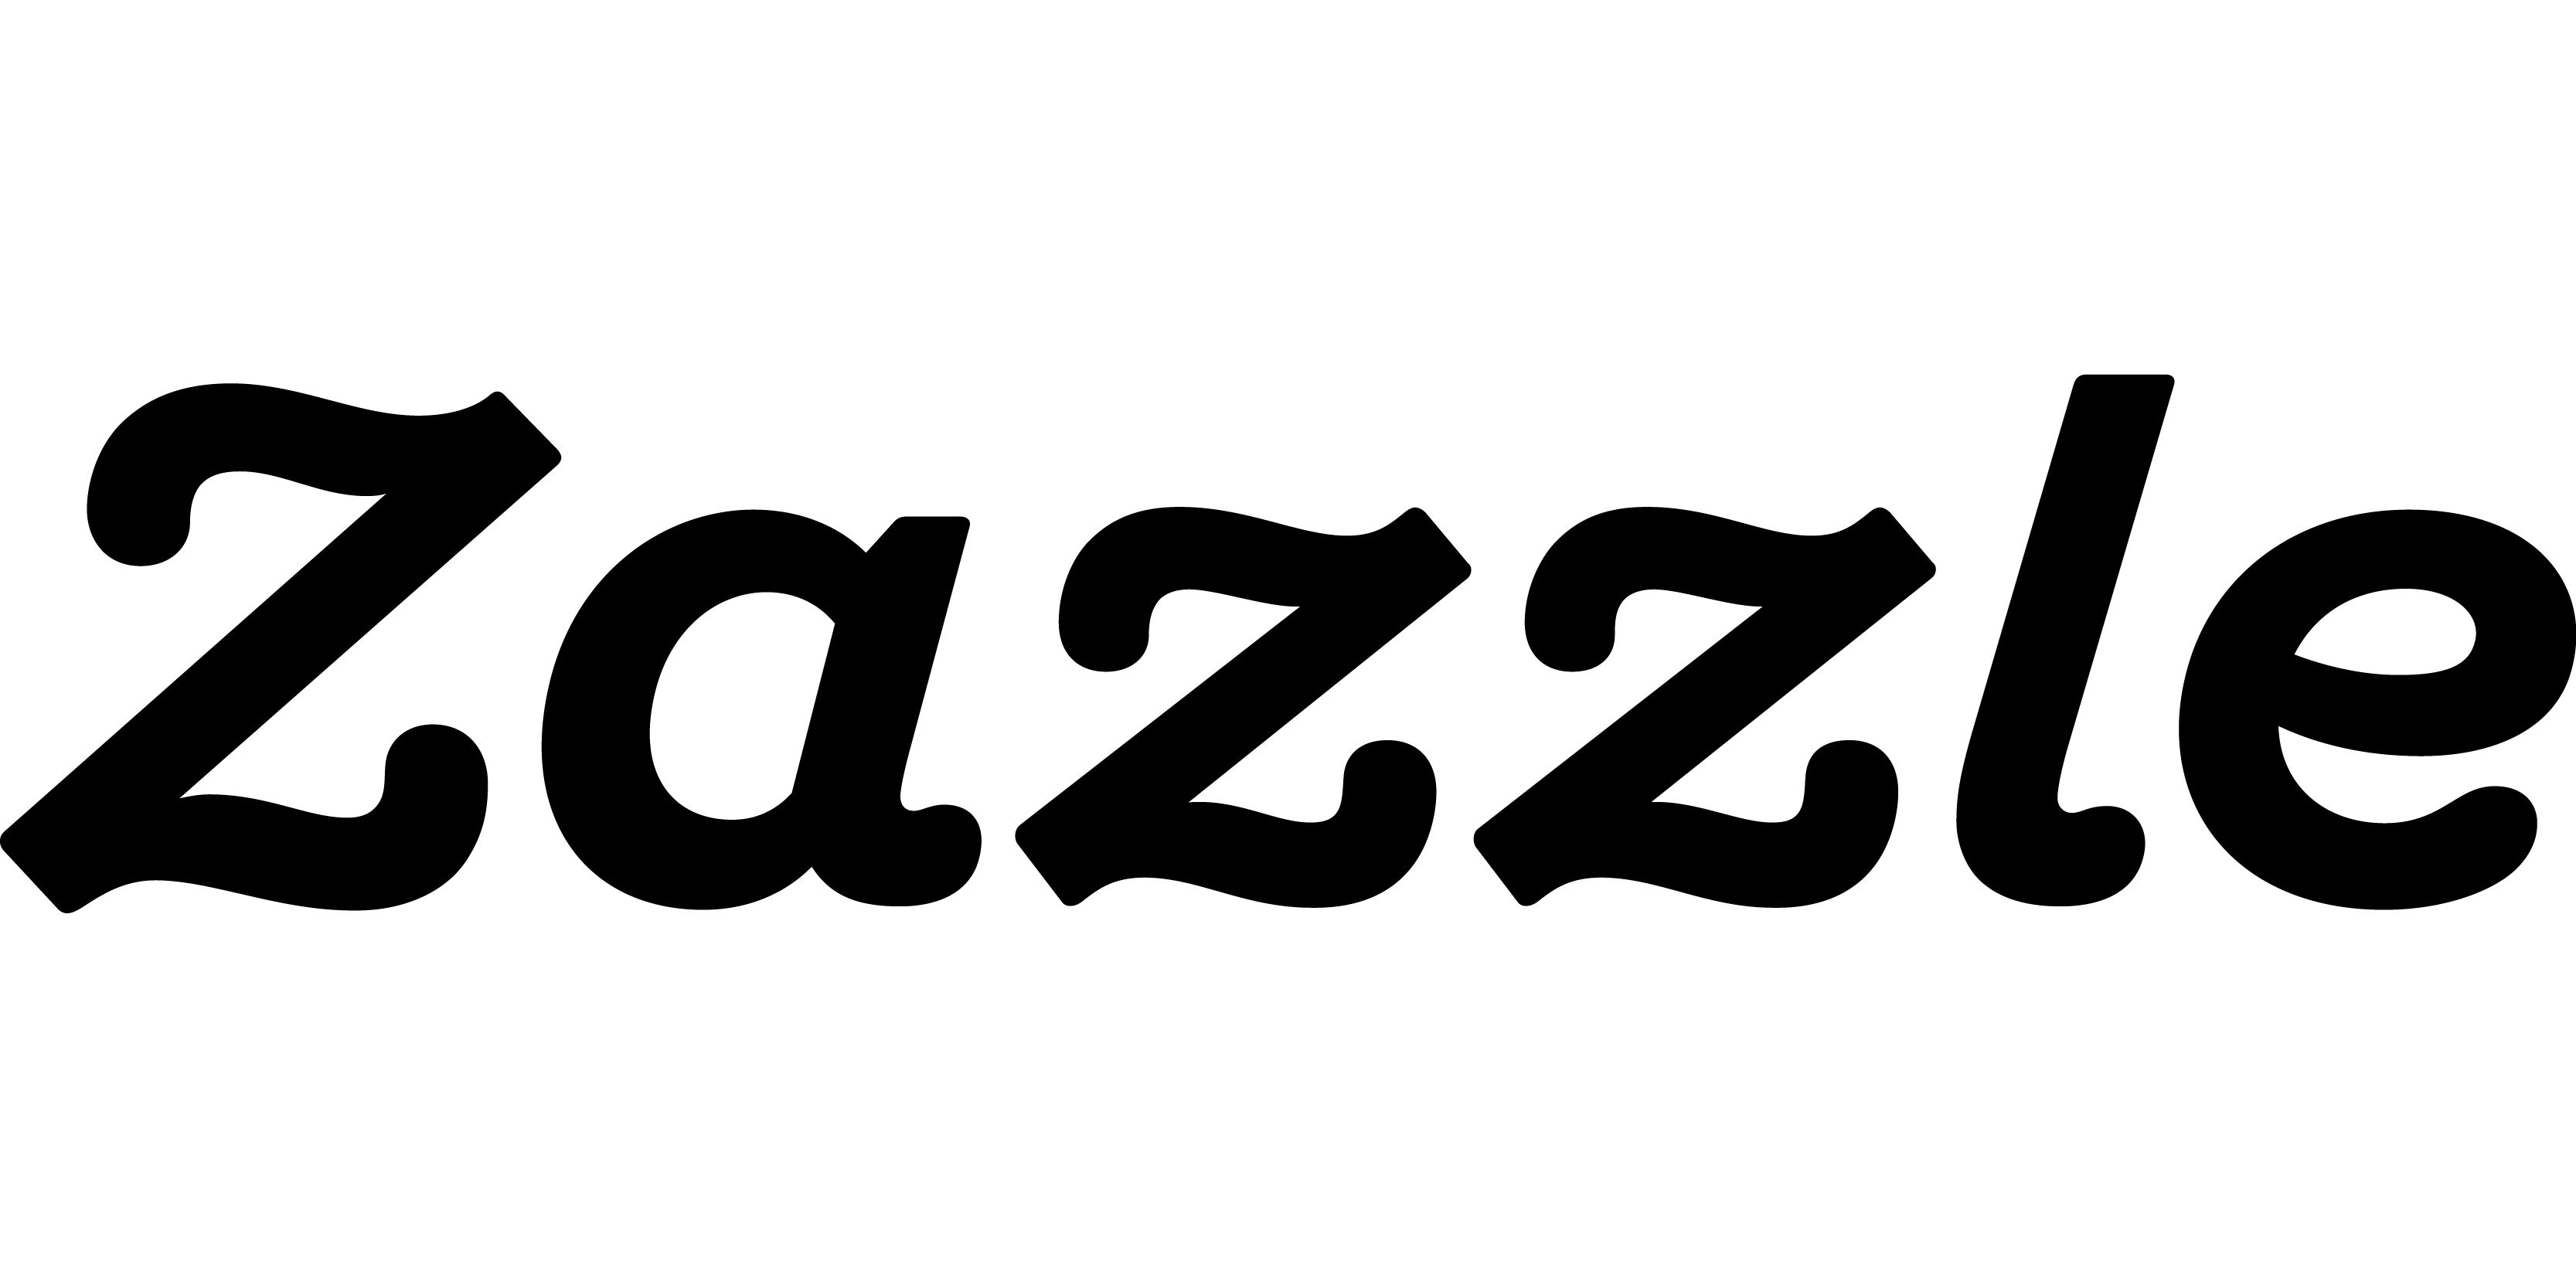 Zazzle Proxy